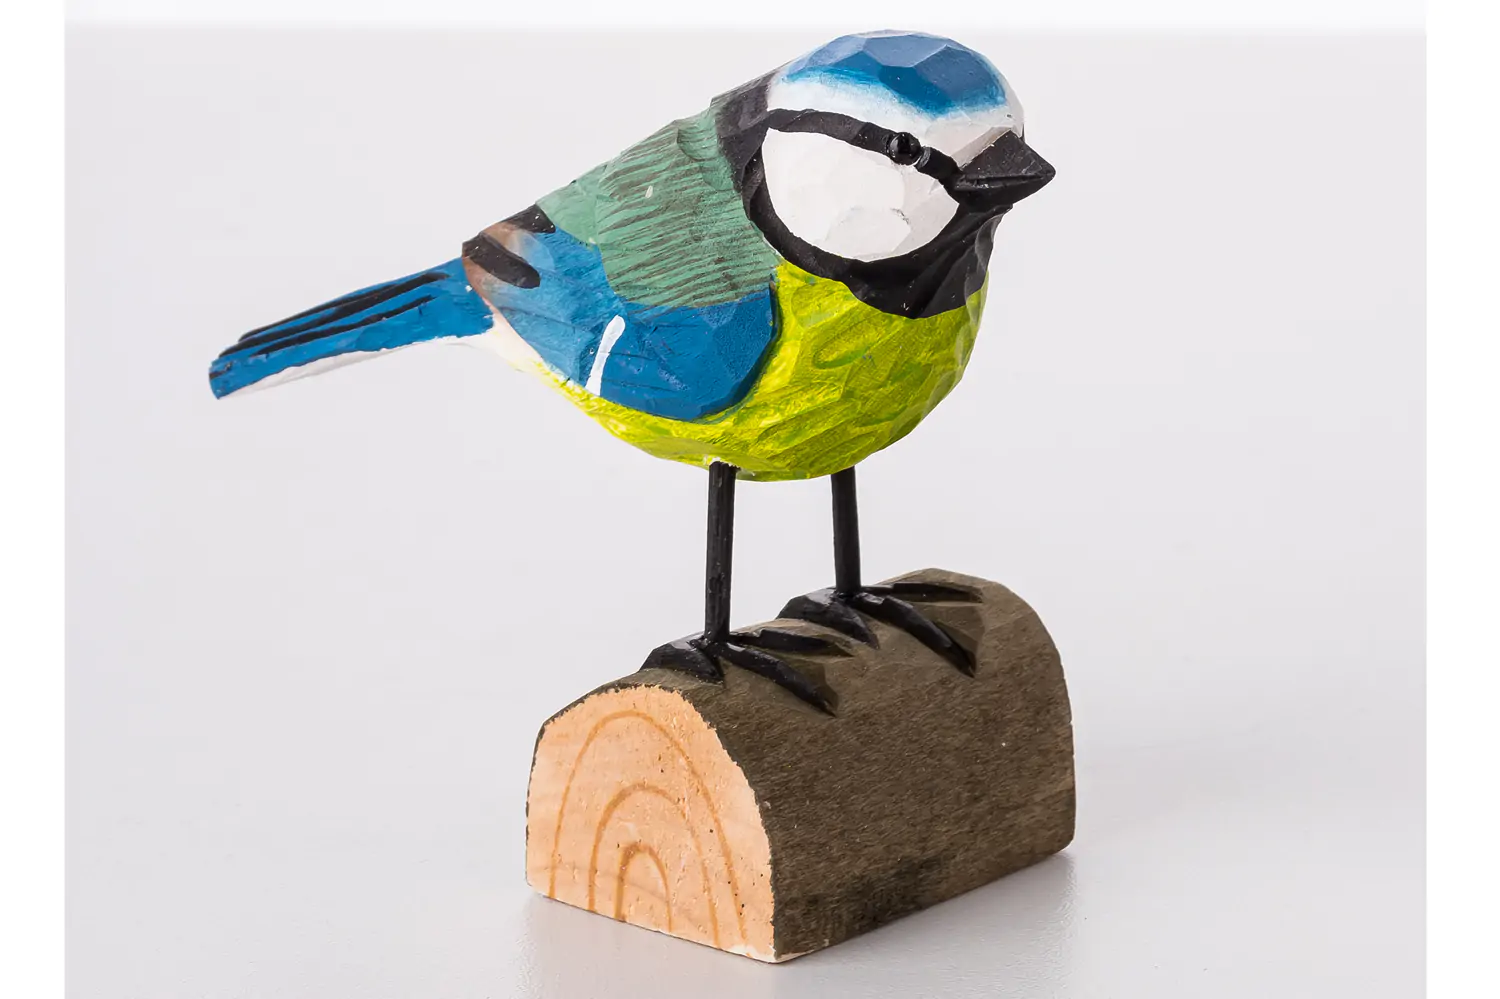 Produktfoto mit RAW-Entwicklung Vogel aus Holz handbemalt